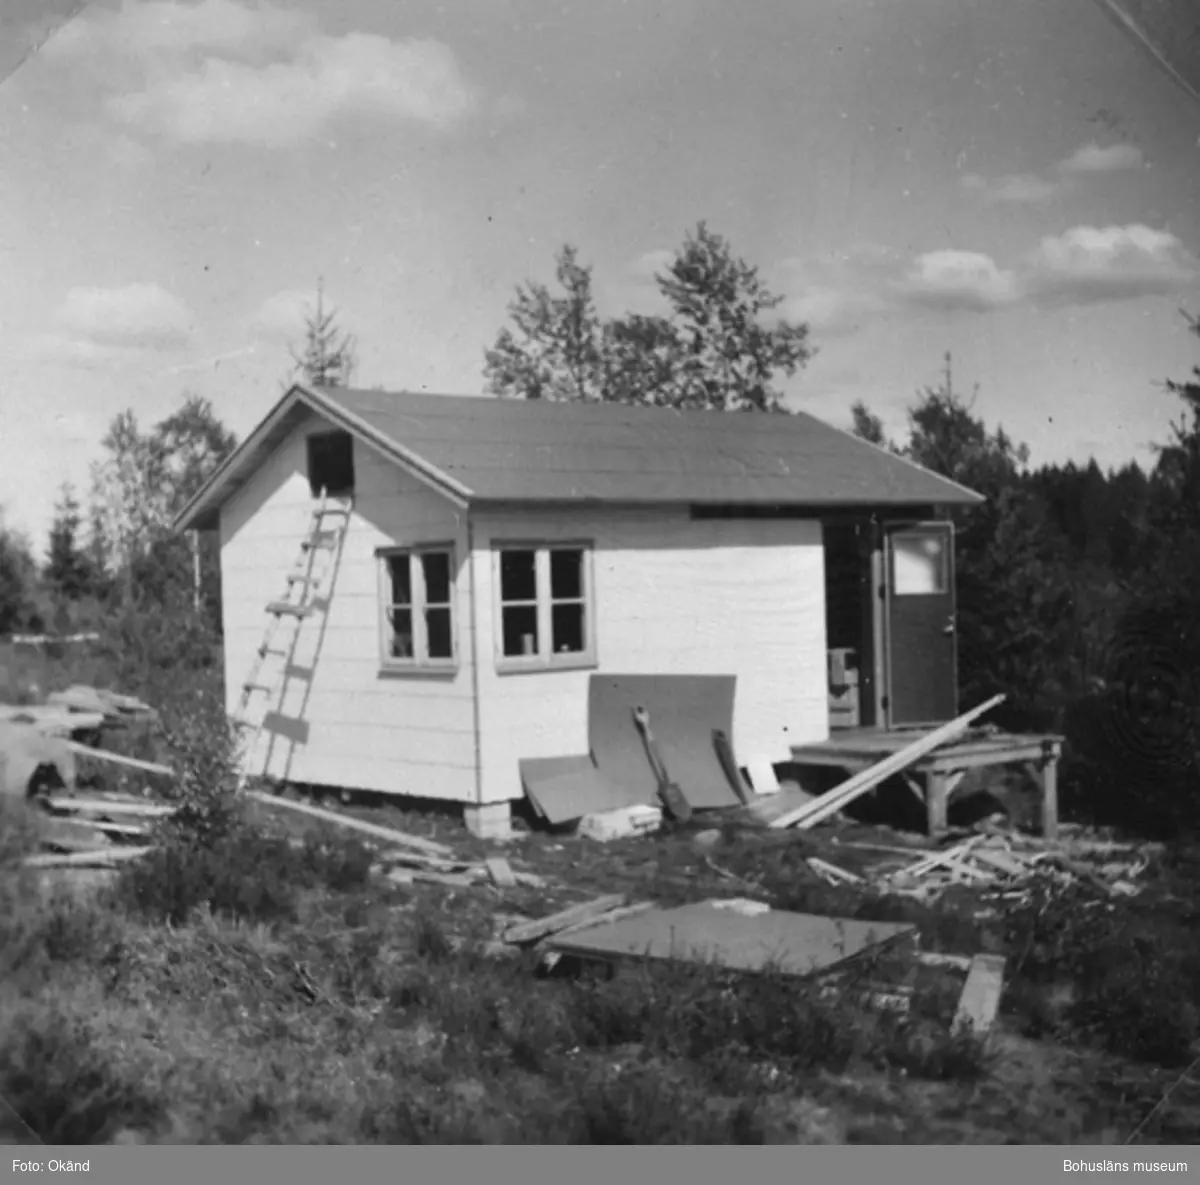 Text till bilden: "Hans och Hertha Busch bygger en stuga, Herrestadsfjället, 1955".